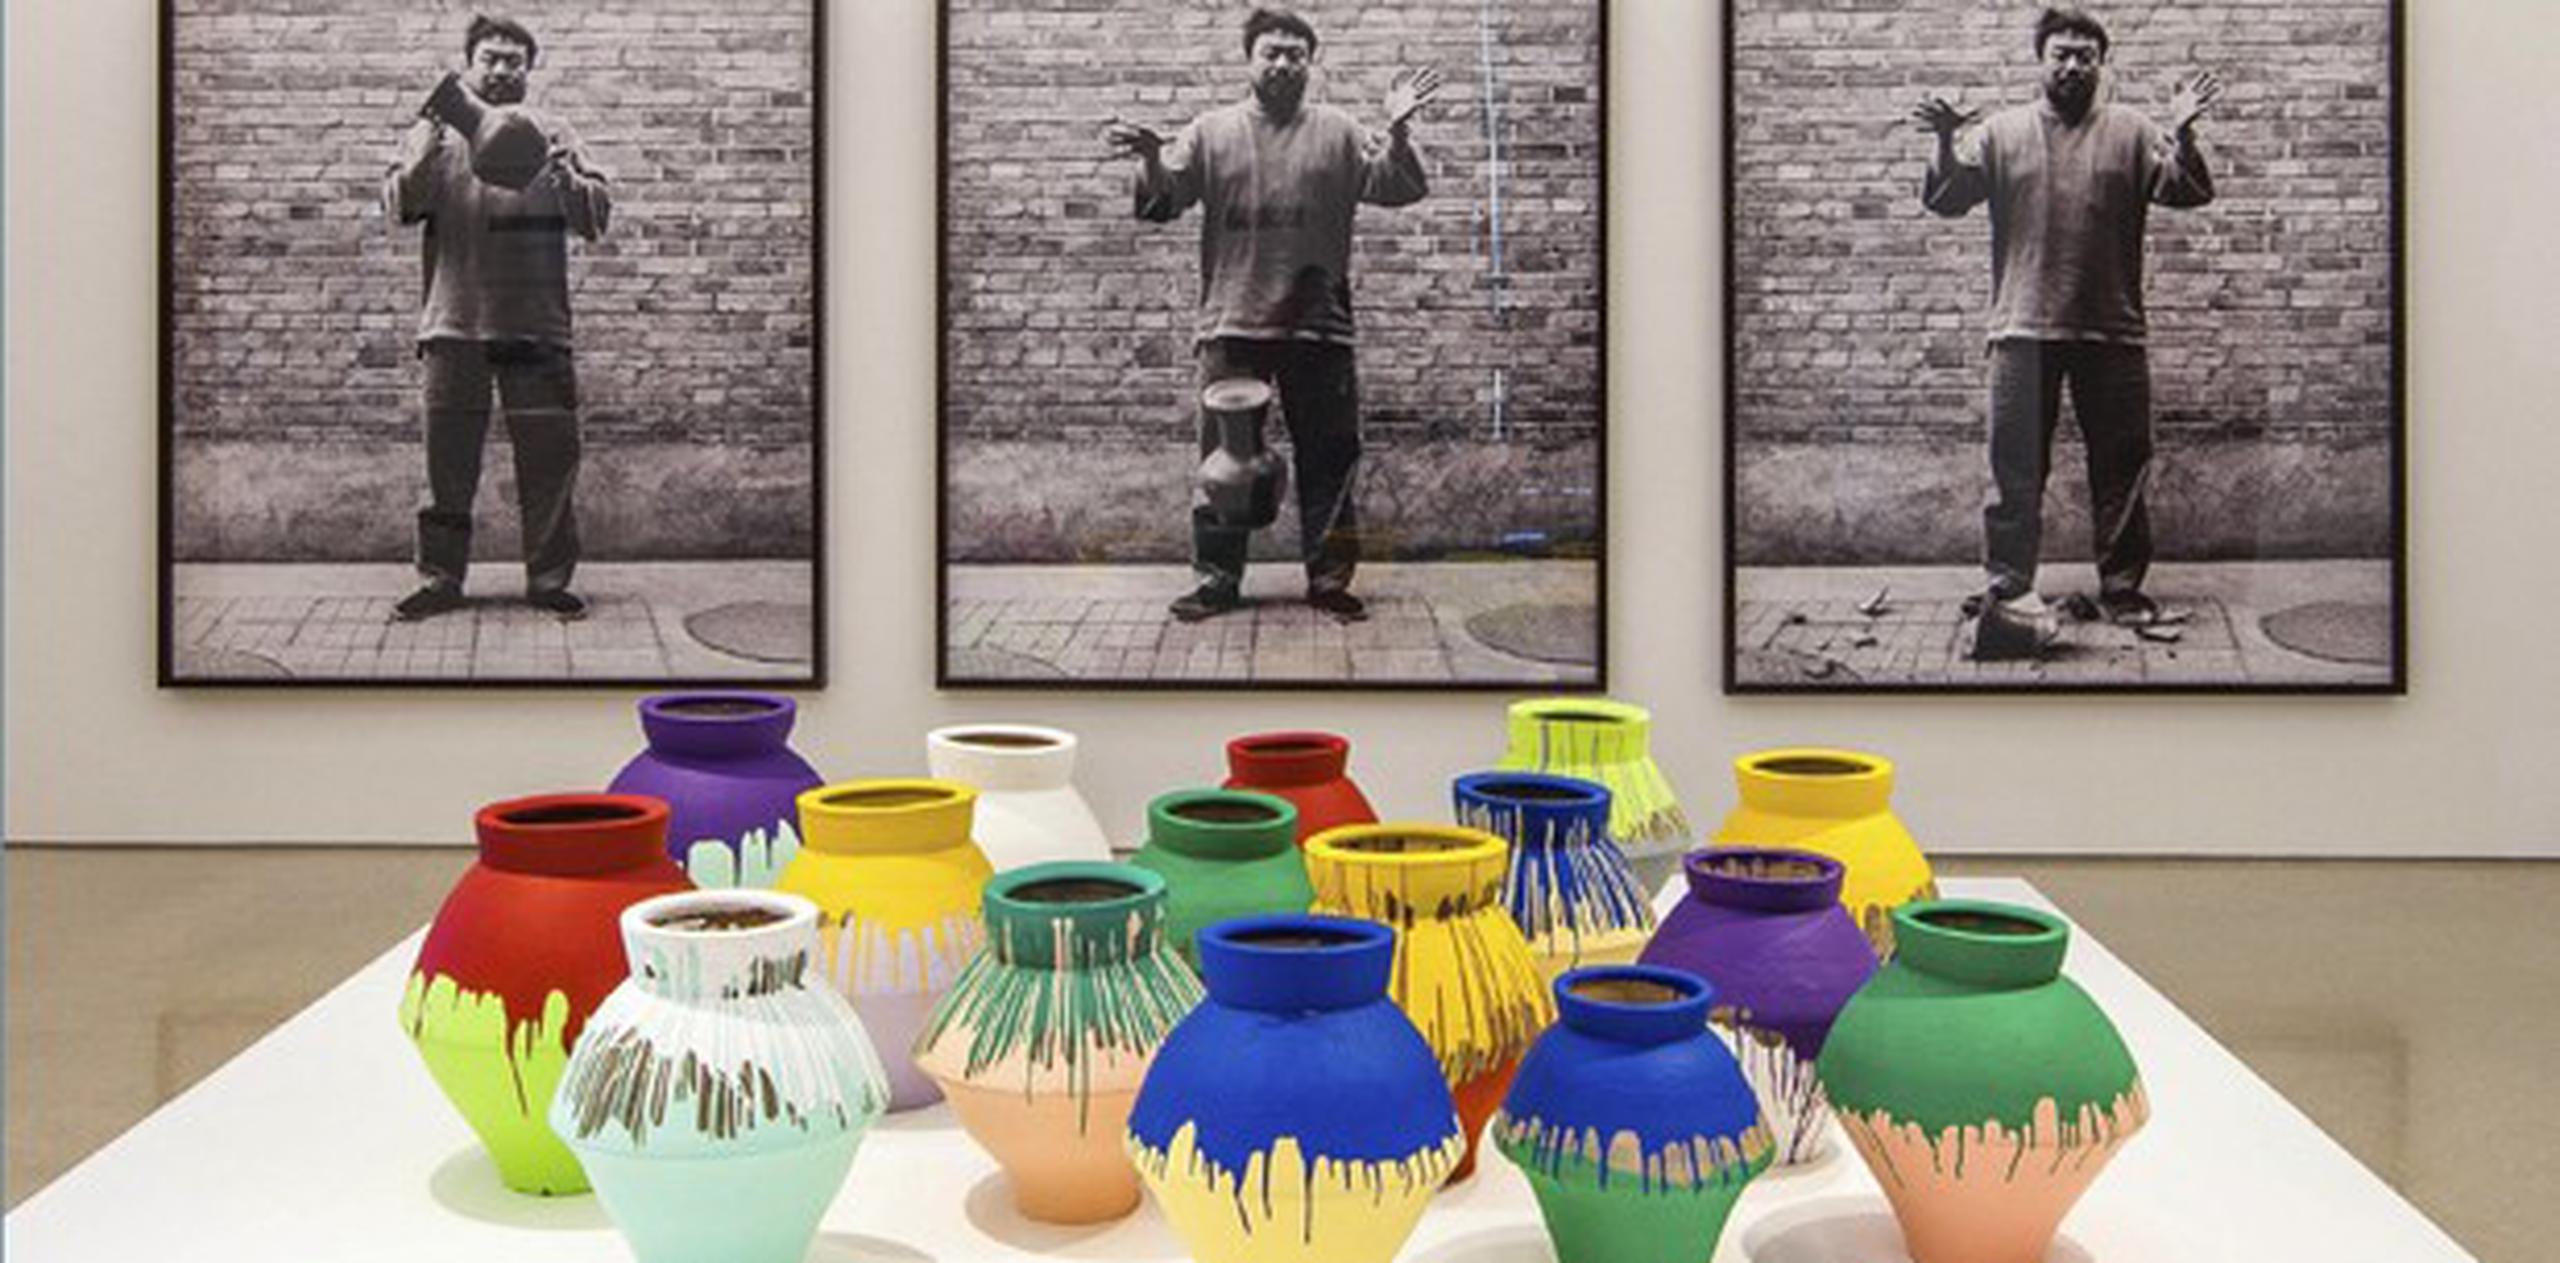 Fotografía facilitada por el Museo de Arte Pérez que muestra la instalación del artista chino Ai Weiwei. (EFE)
